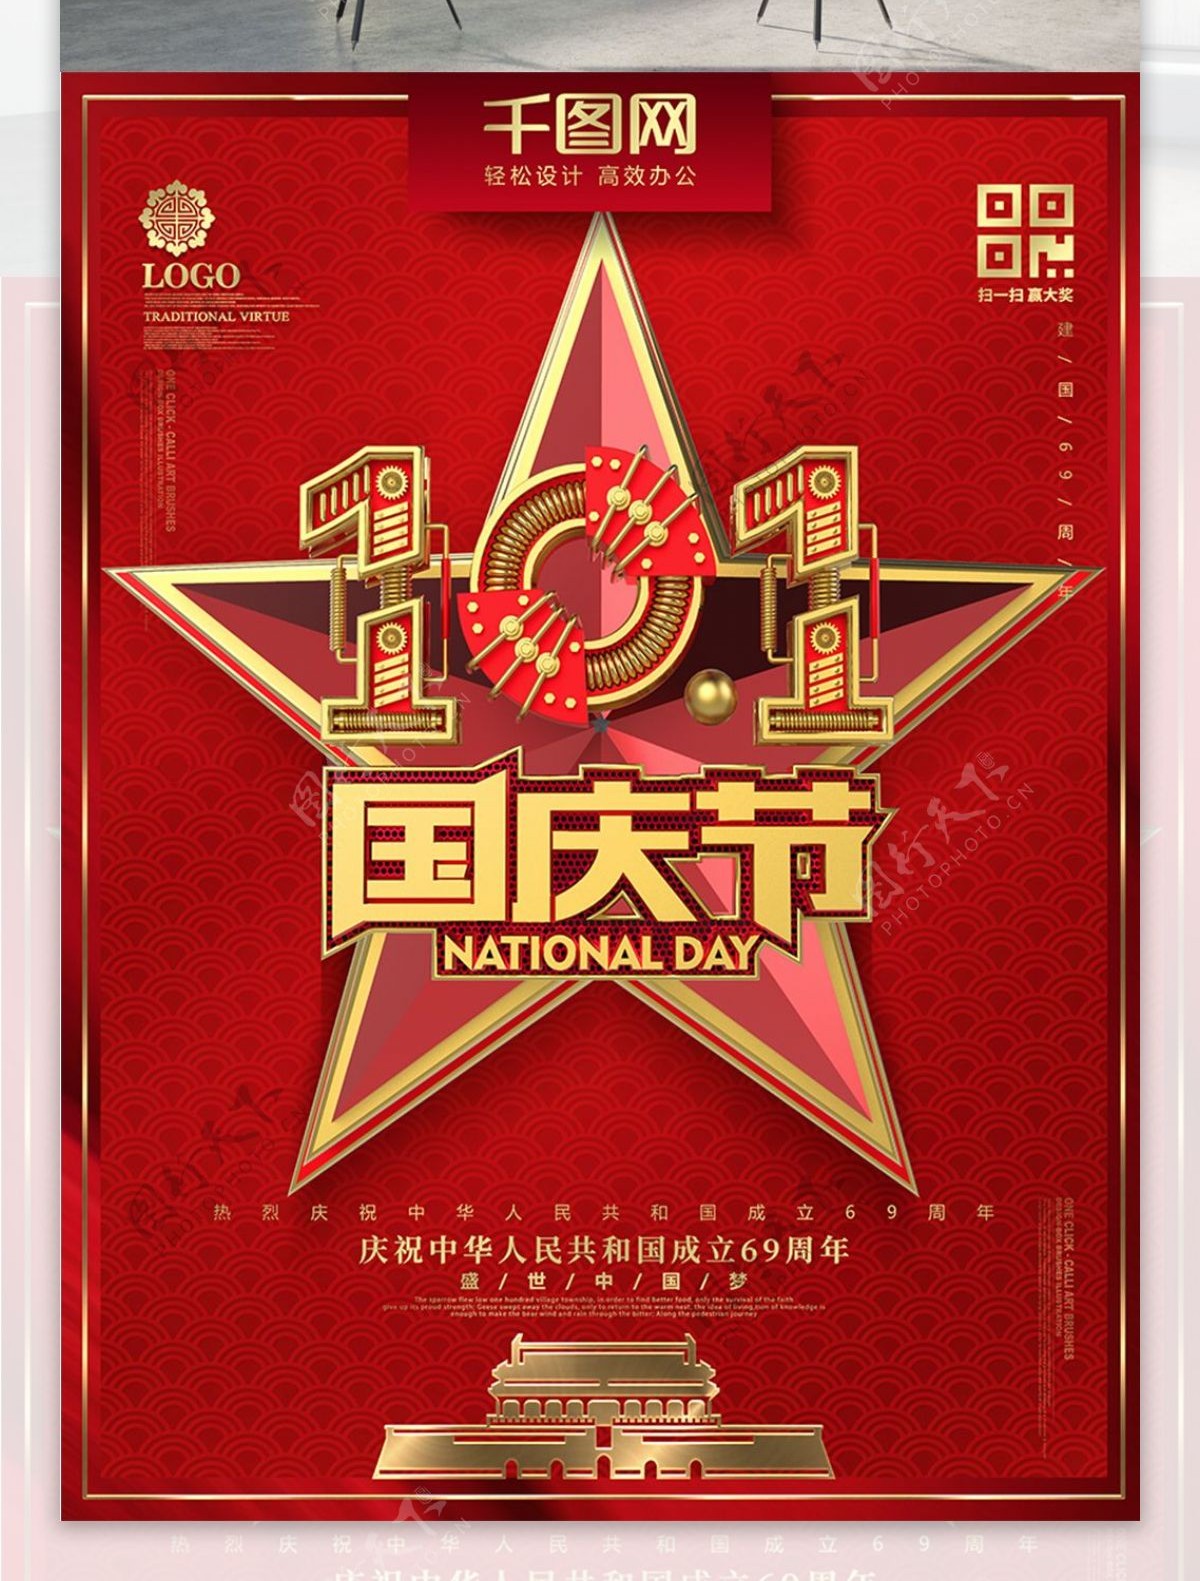 C4D创意红金机械字国庆节节日宣传海报